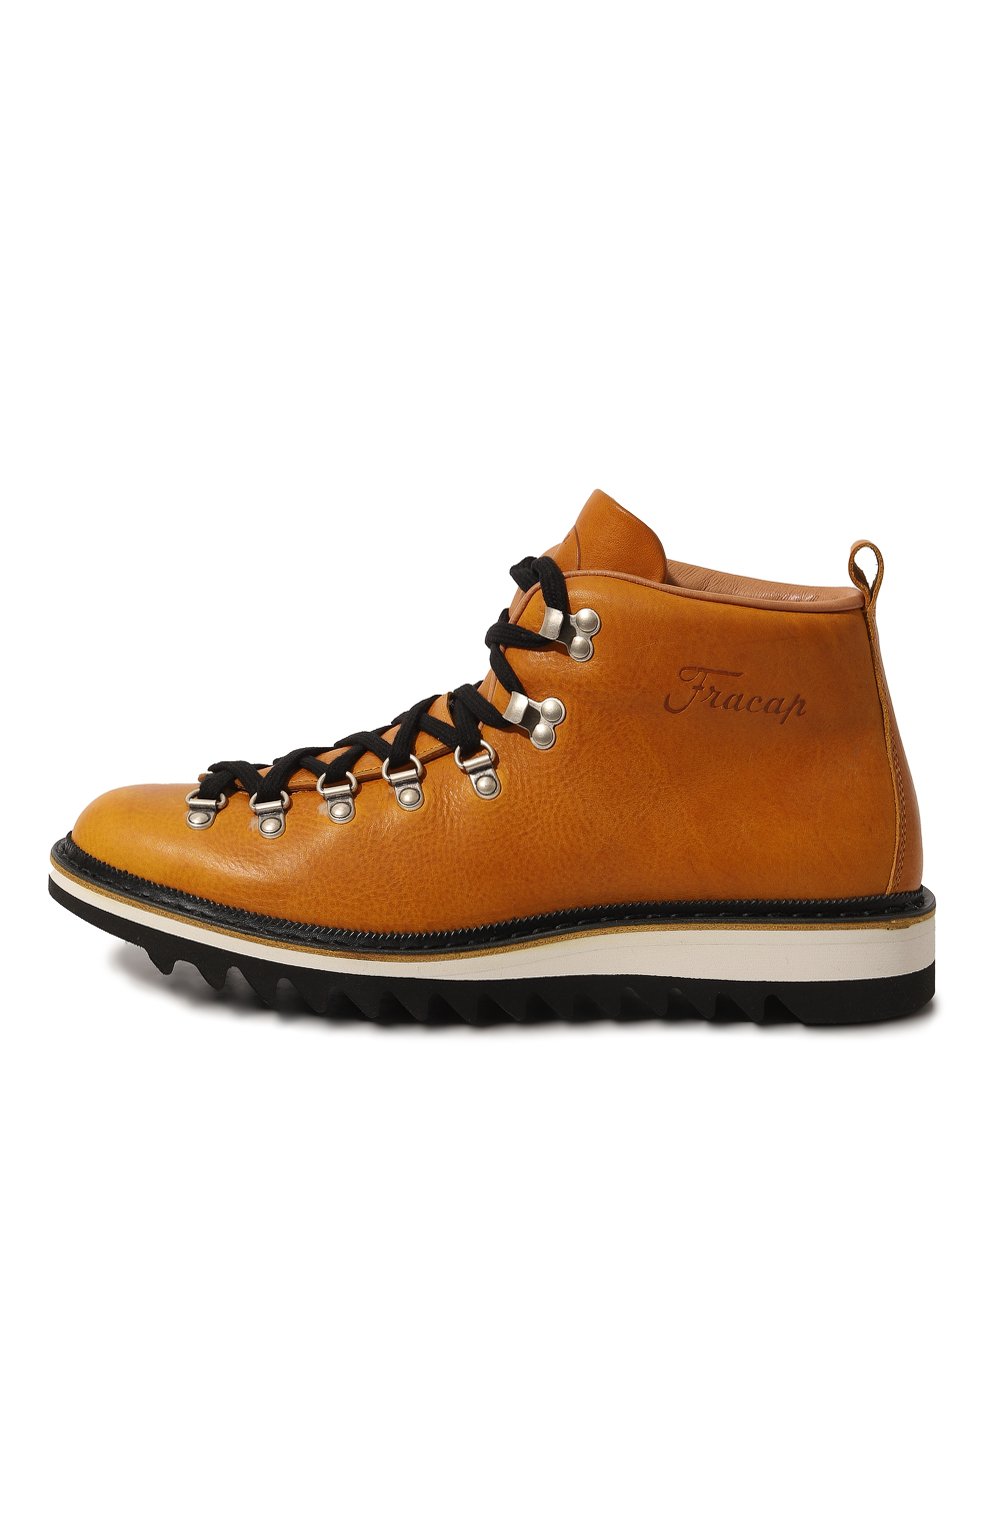 Мужские желтые кожаные ботинки FRACAP купить в интернет-магазине ЦУМ, арт.M120 R0C/NEBRASKA 377